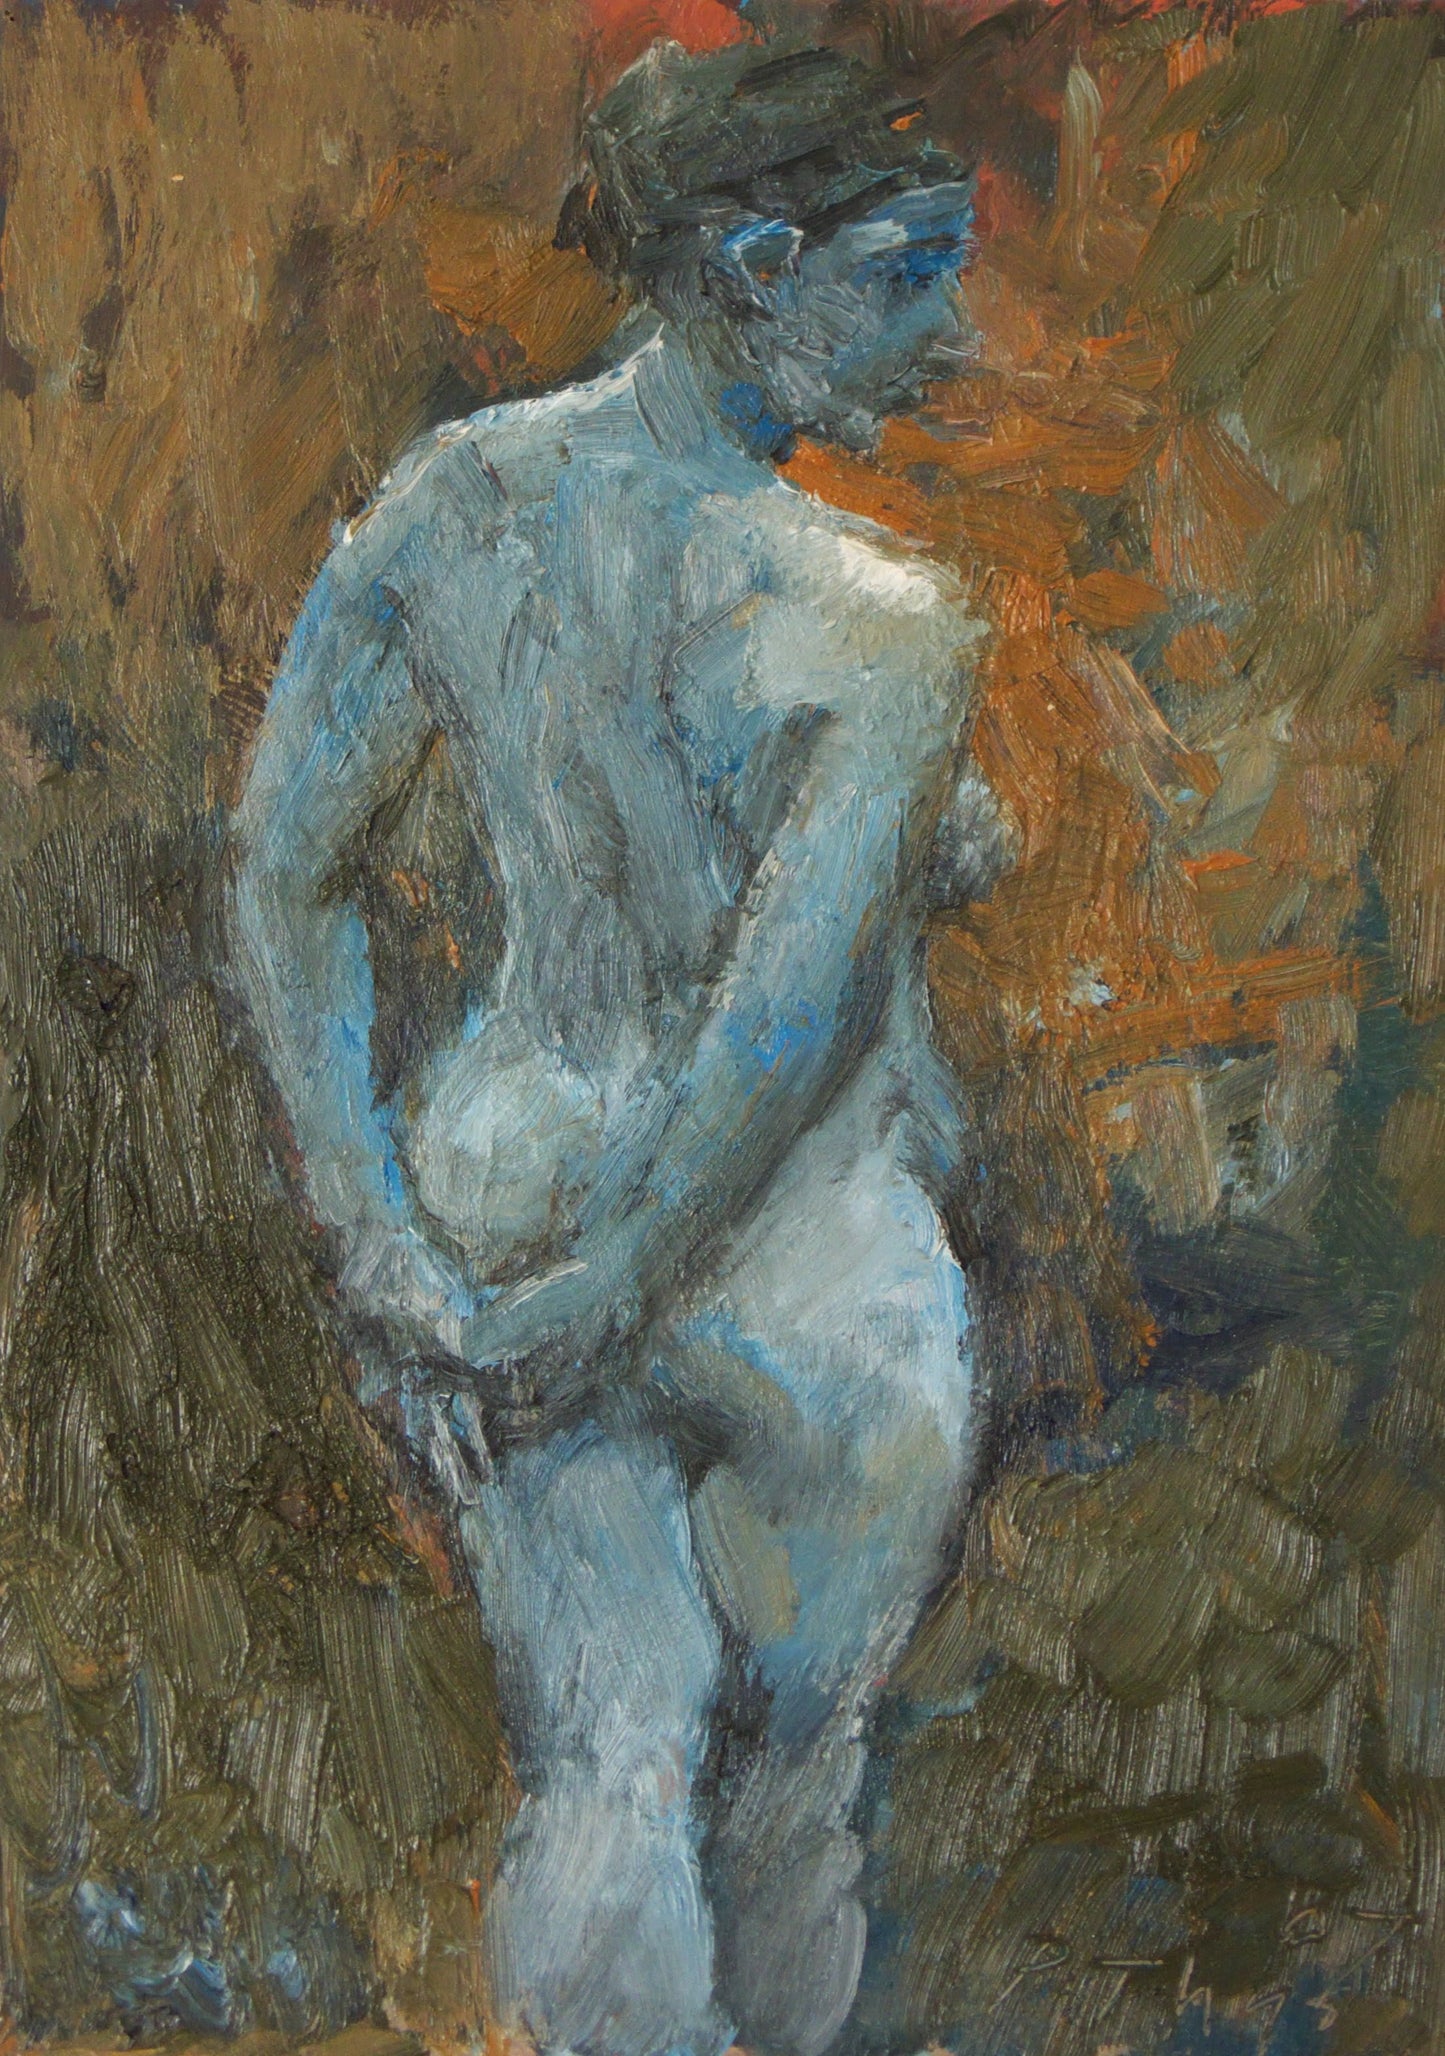 ‘Figure study in blue’ 2007 oil on board 46x32cm